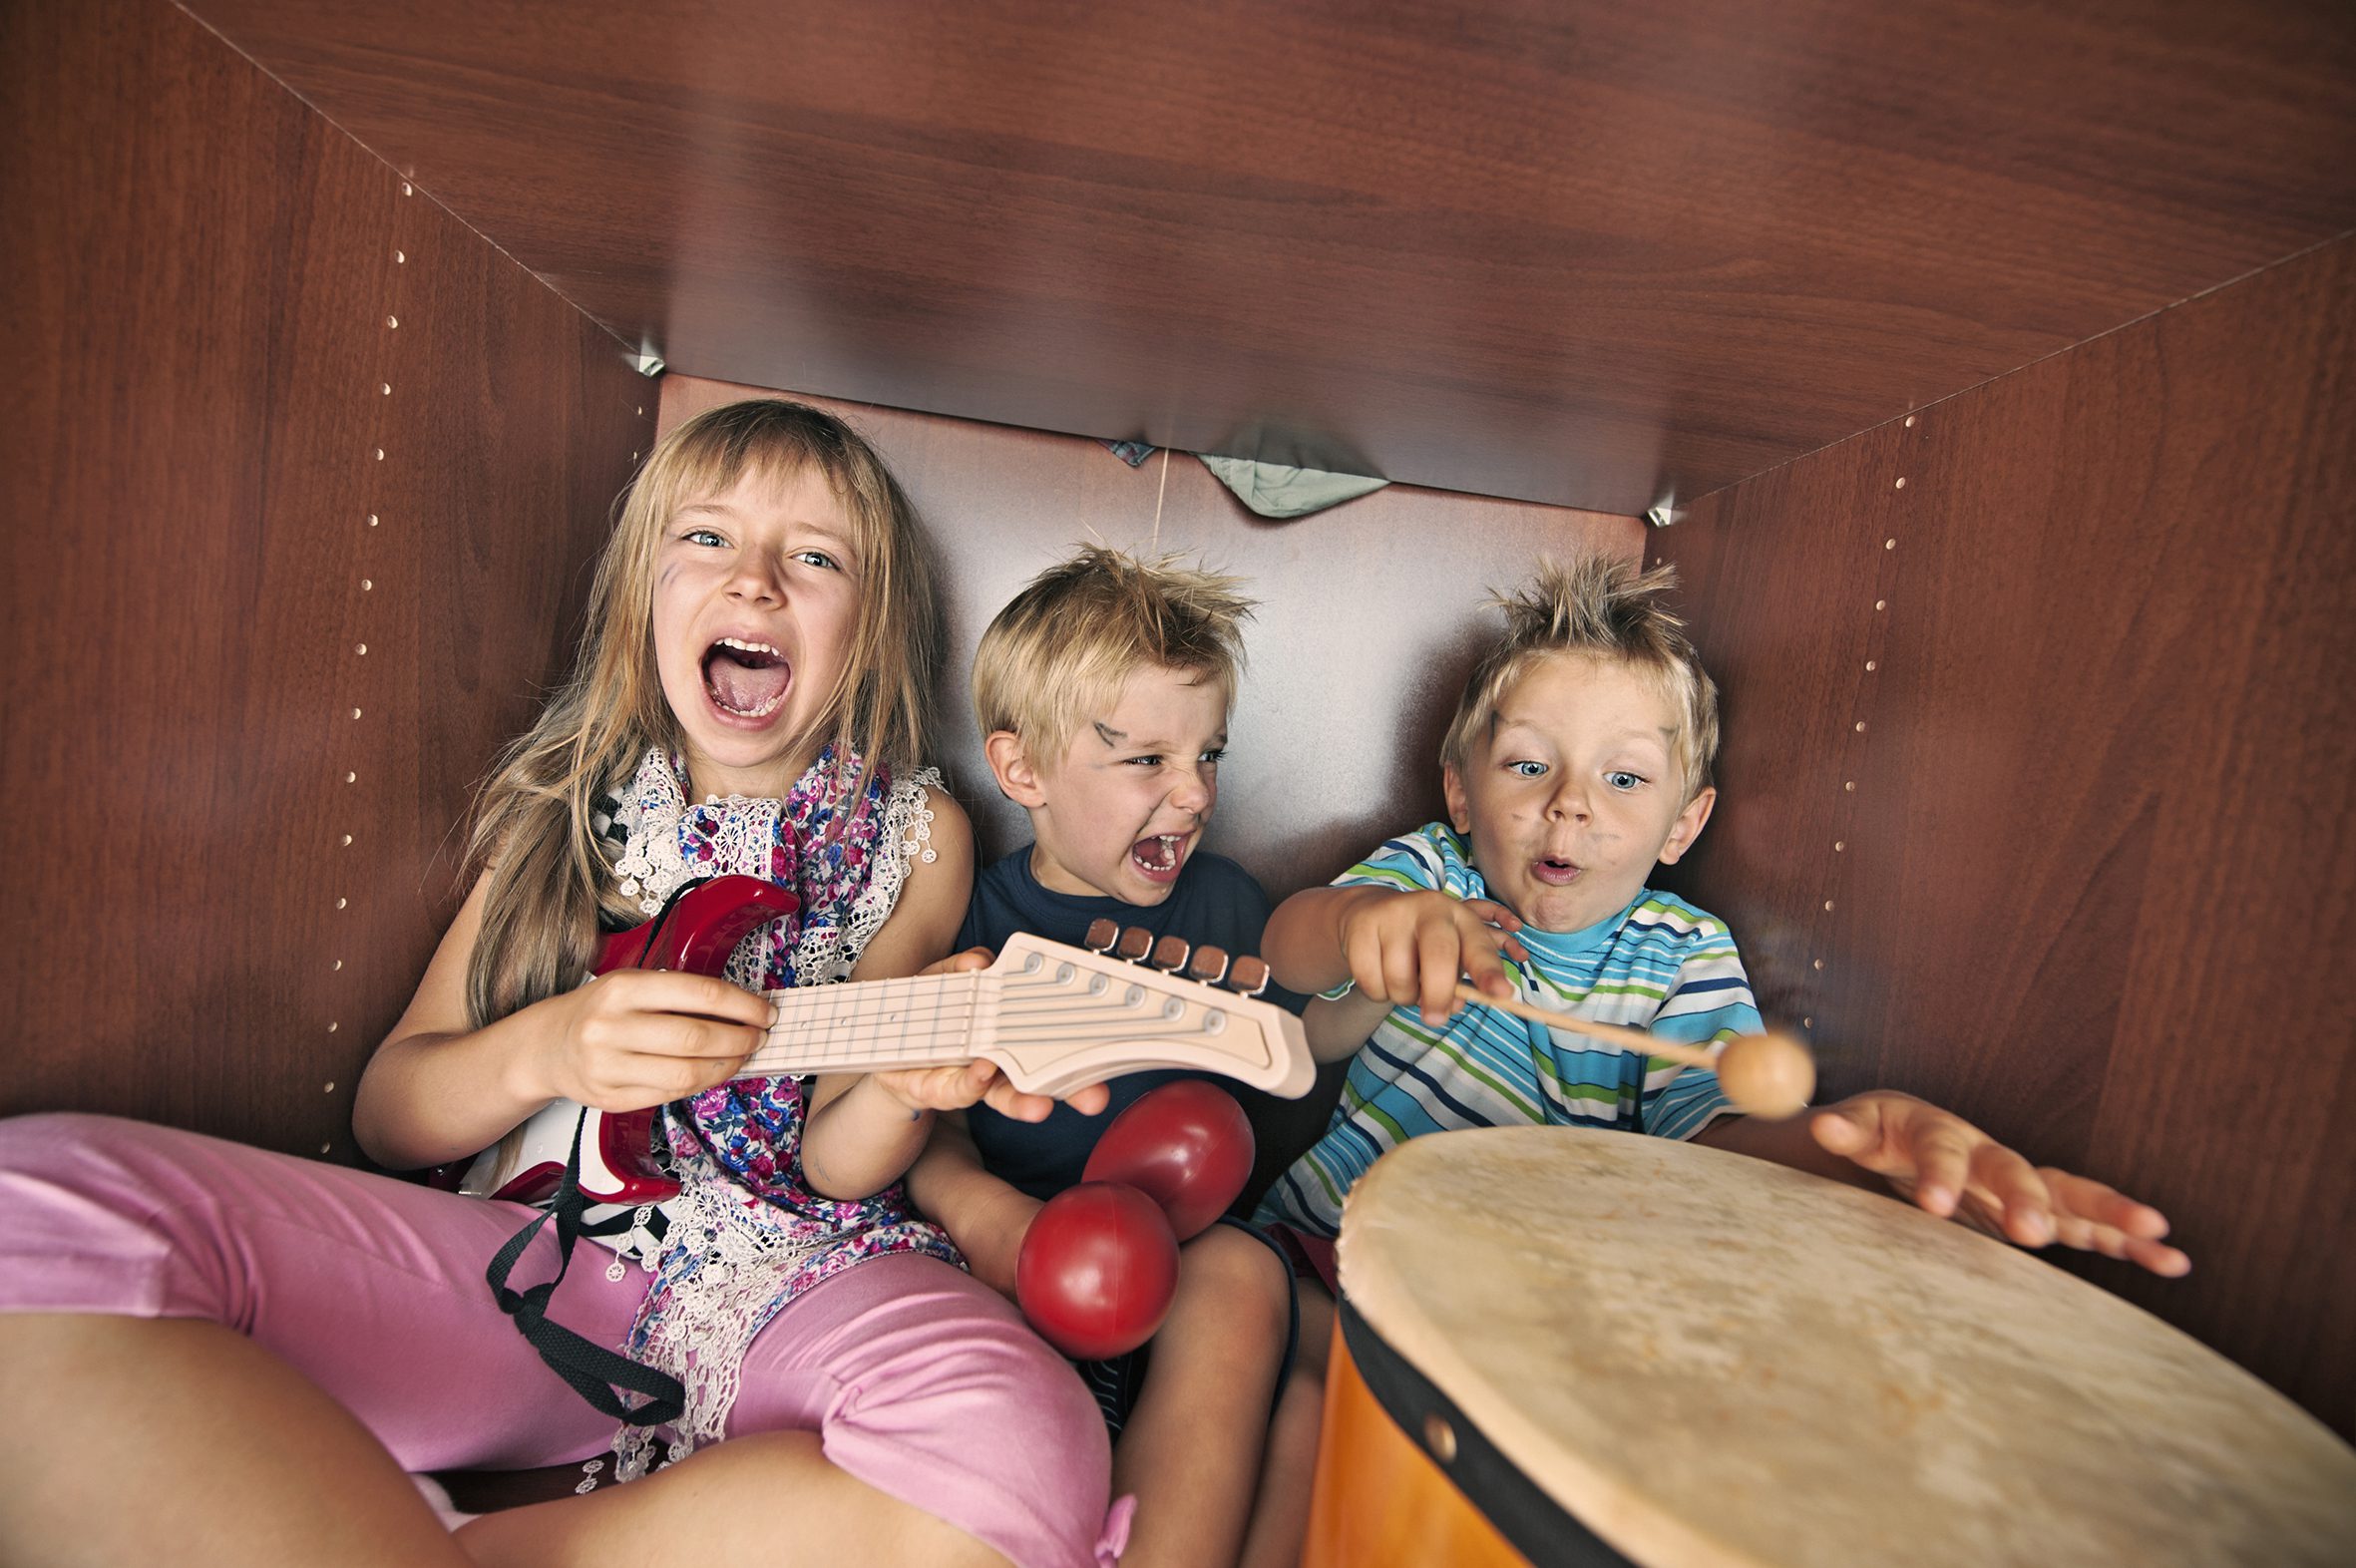 Kinderband spielt Instrumente und singt kreischend im Kleiderschrank.